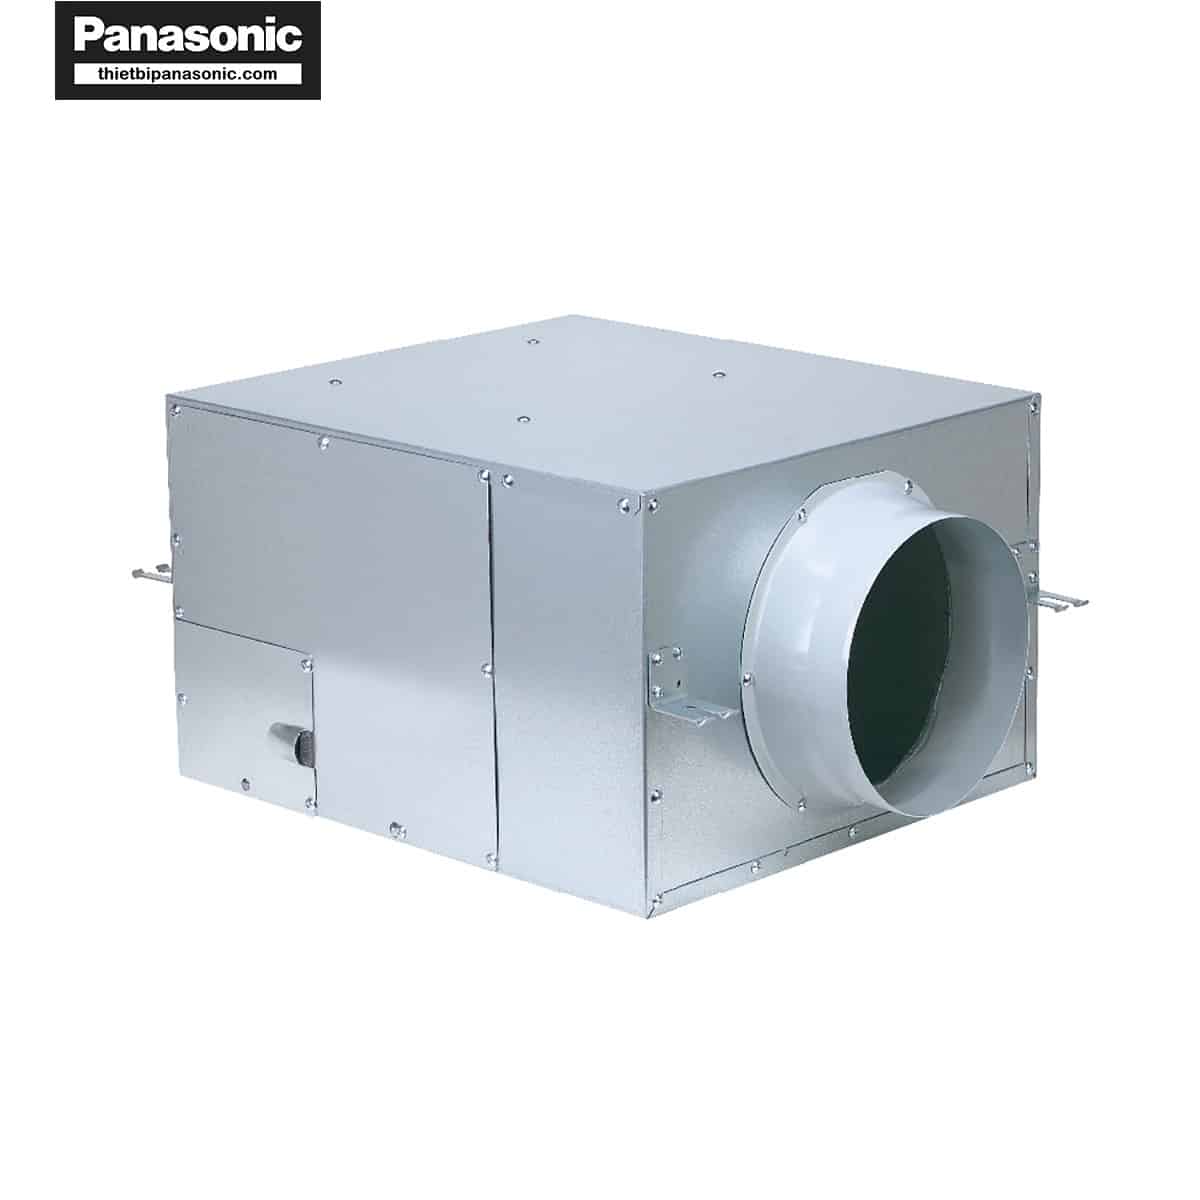 Quạt hút Cabinet Panasonic FV-20NS3 có thiết kế vuông vức, cứng cáp nhờ làm từ vật liệu thép mạ kẽm